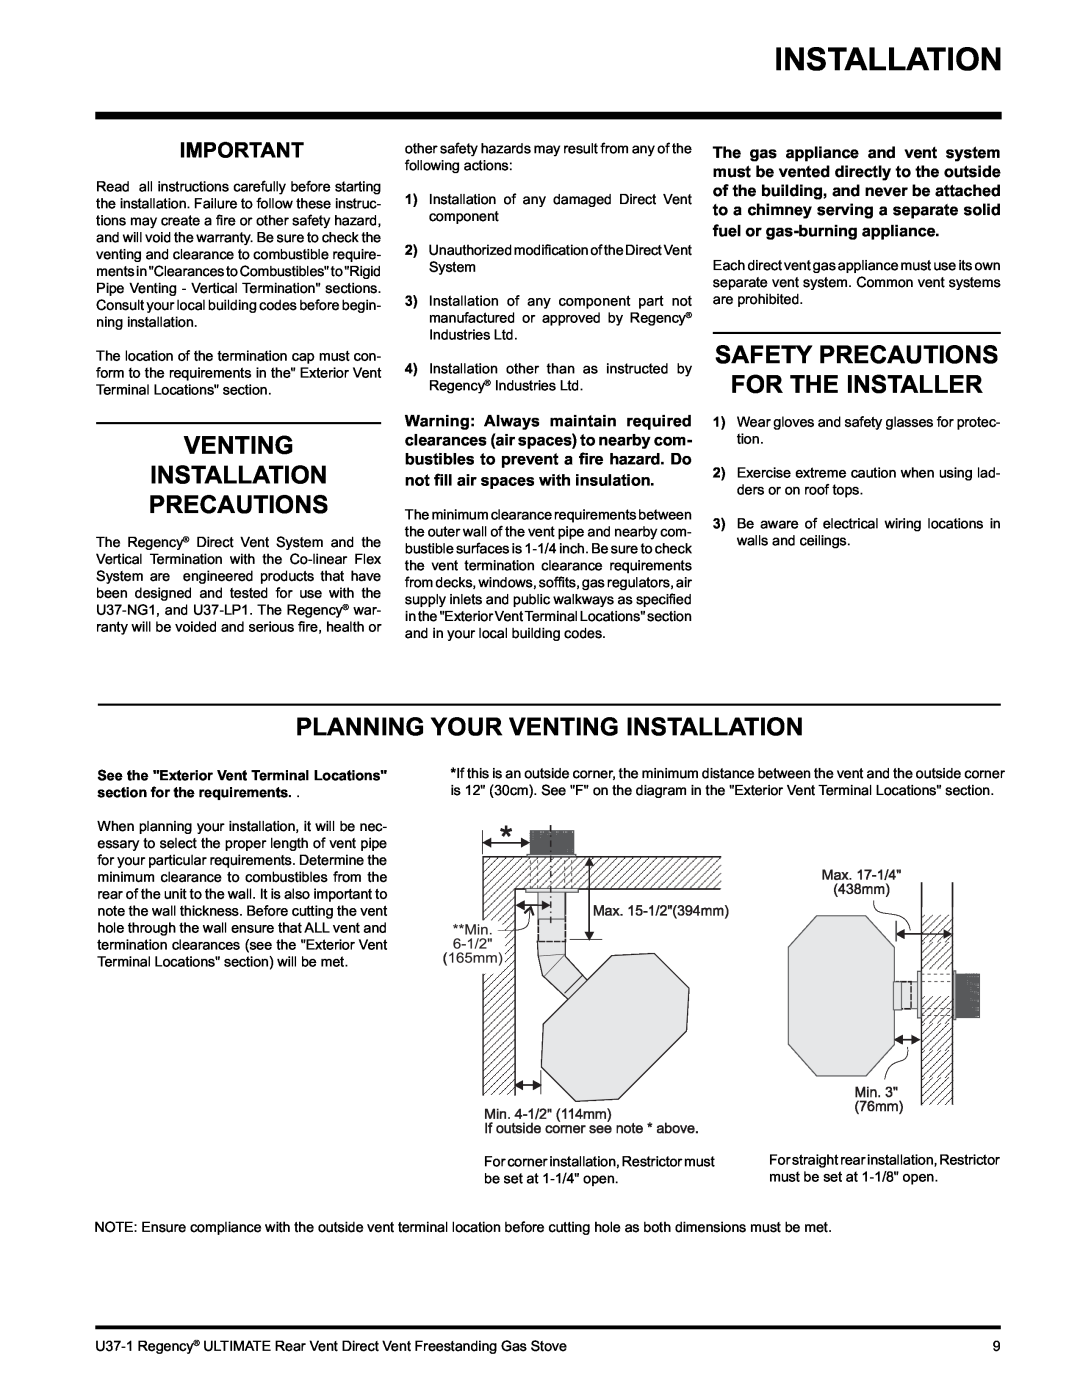 Regency U37-NG1, U37-LP1 installation manual Venting Installation Precautions, Safety Precautions For The Installer 